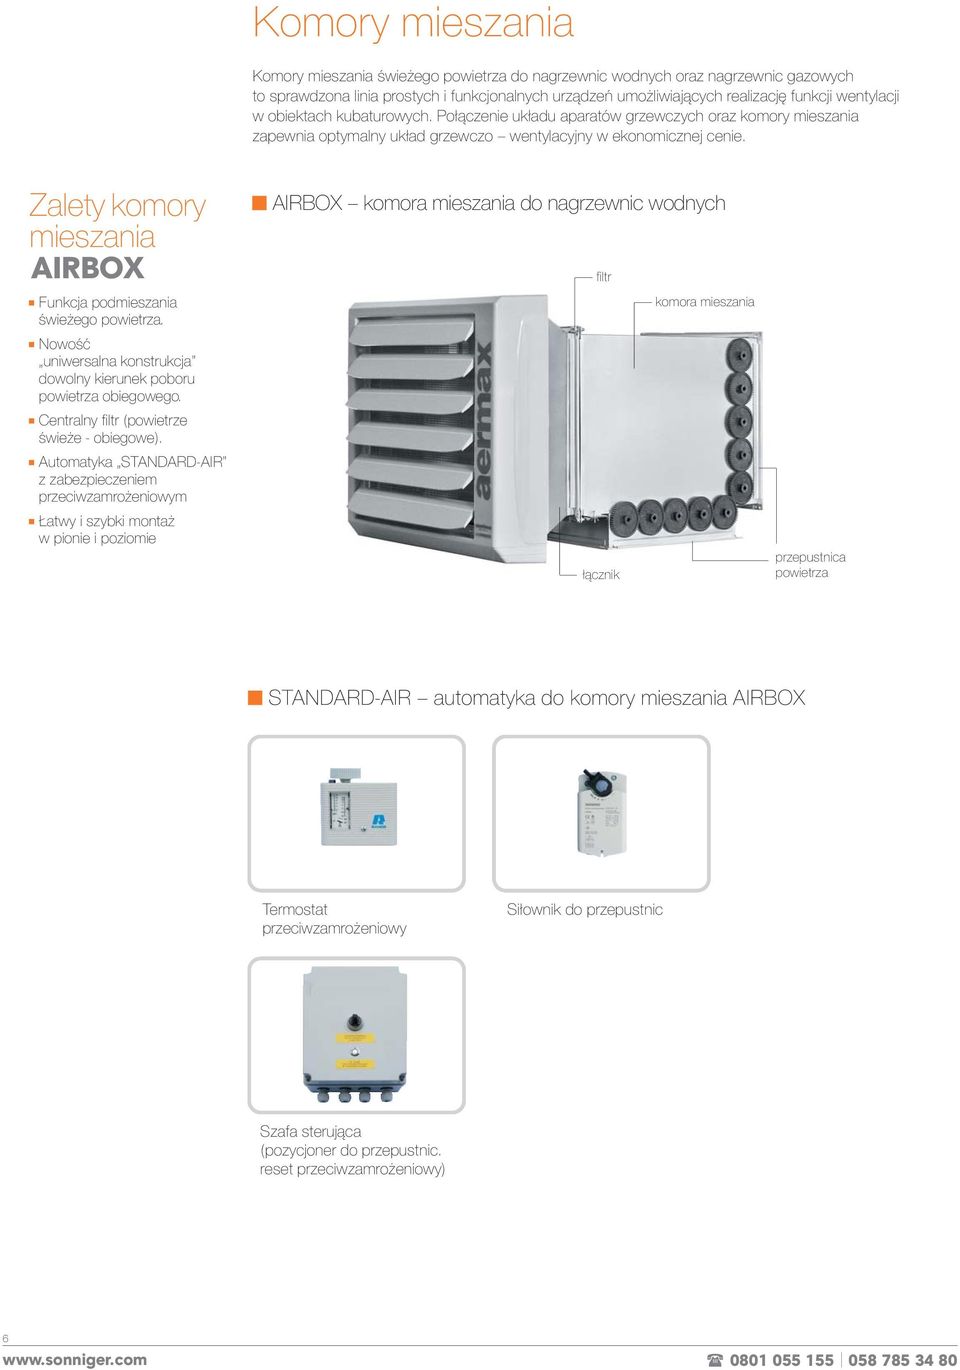 Zalety komory mieszania AIRBOX Funkcja podmieszania świeżego powietrza. Nowość uniwersalna konstrukcja dowolny kierunek poboru powietrza obiegowego. Centralny filtr (powietrze świeże - obiegowe).